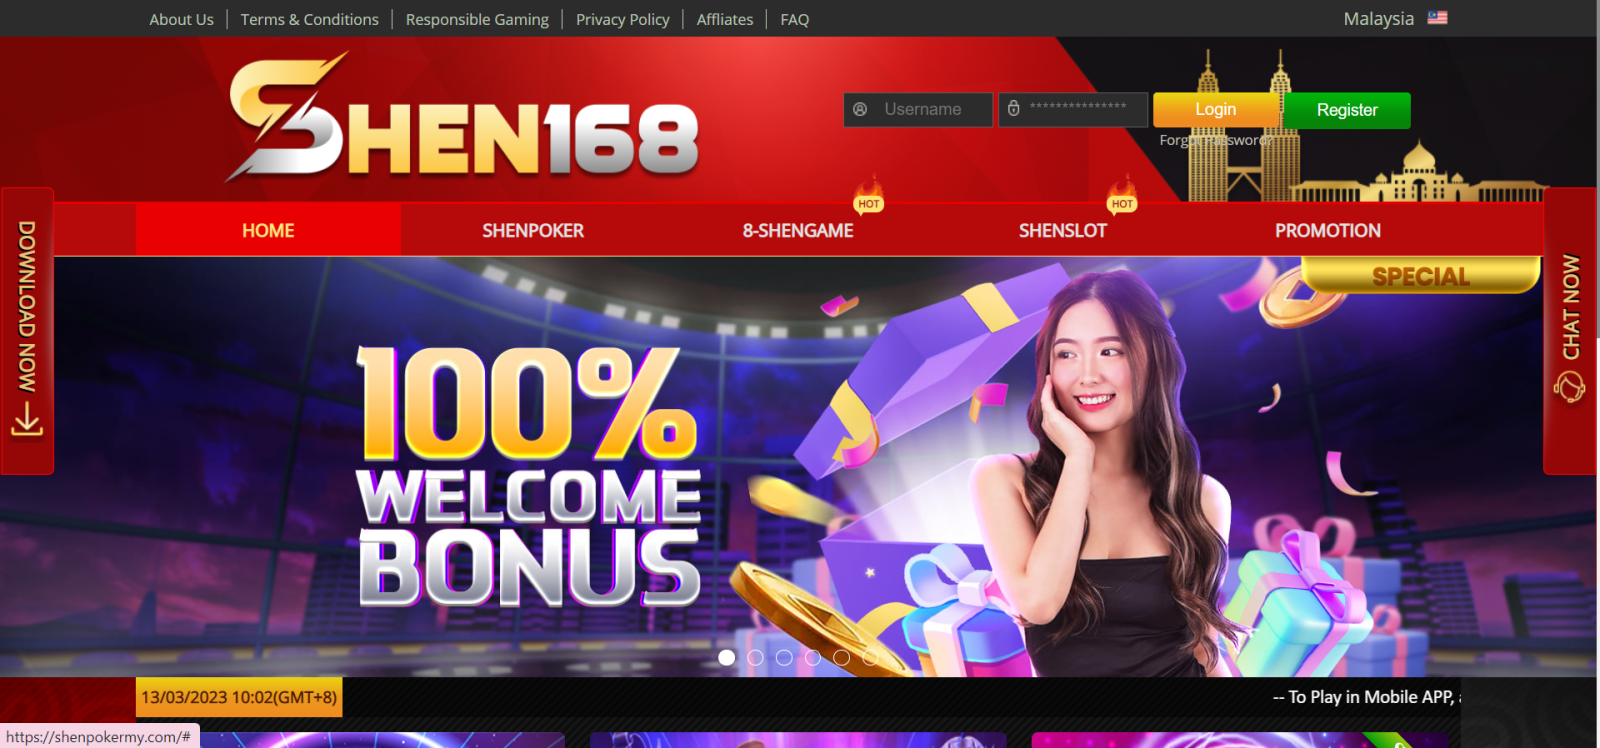 Shen168 Online Casino Malaysia